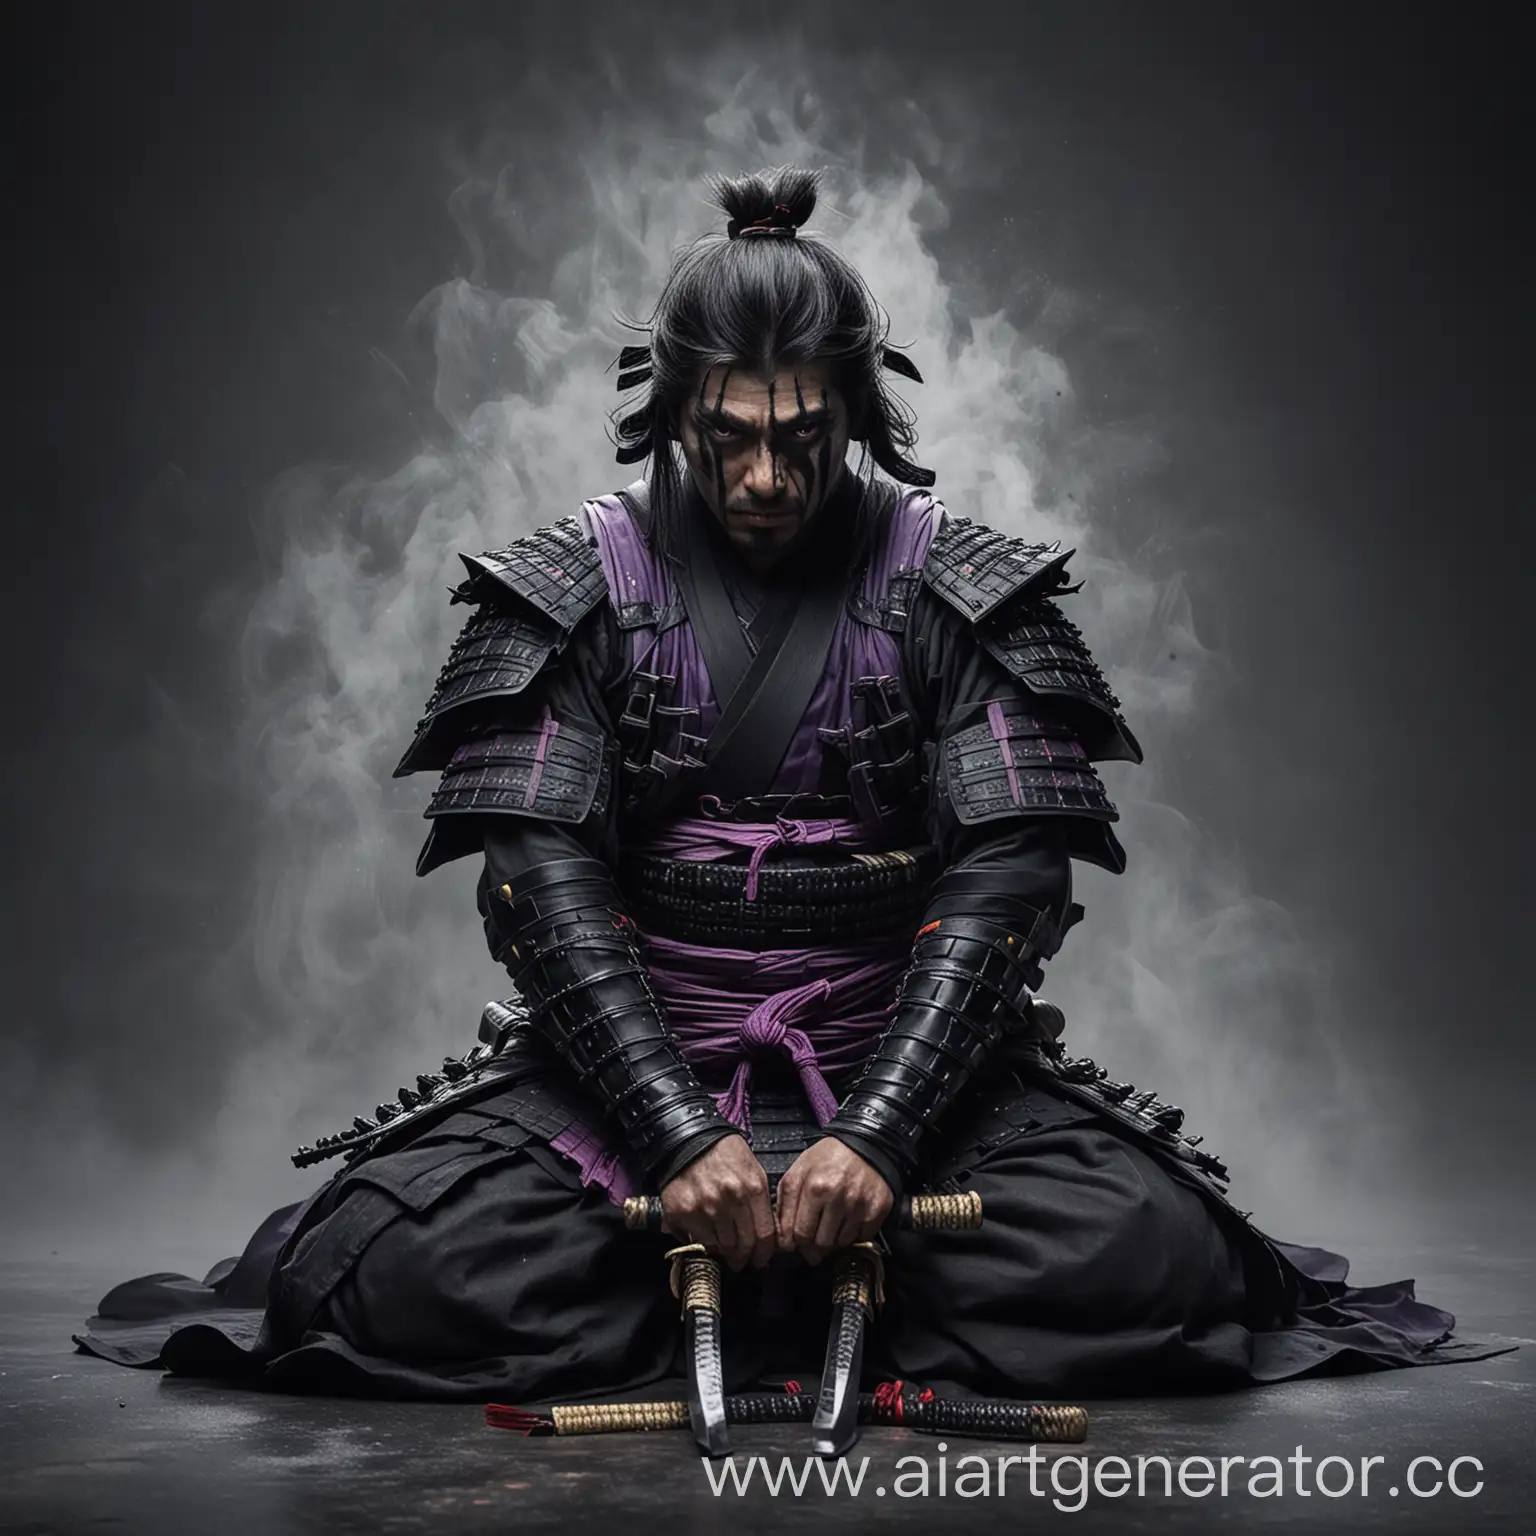 Samurai-Surrendering-in-Black-Armor-Amidst-Thick-Fog